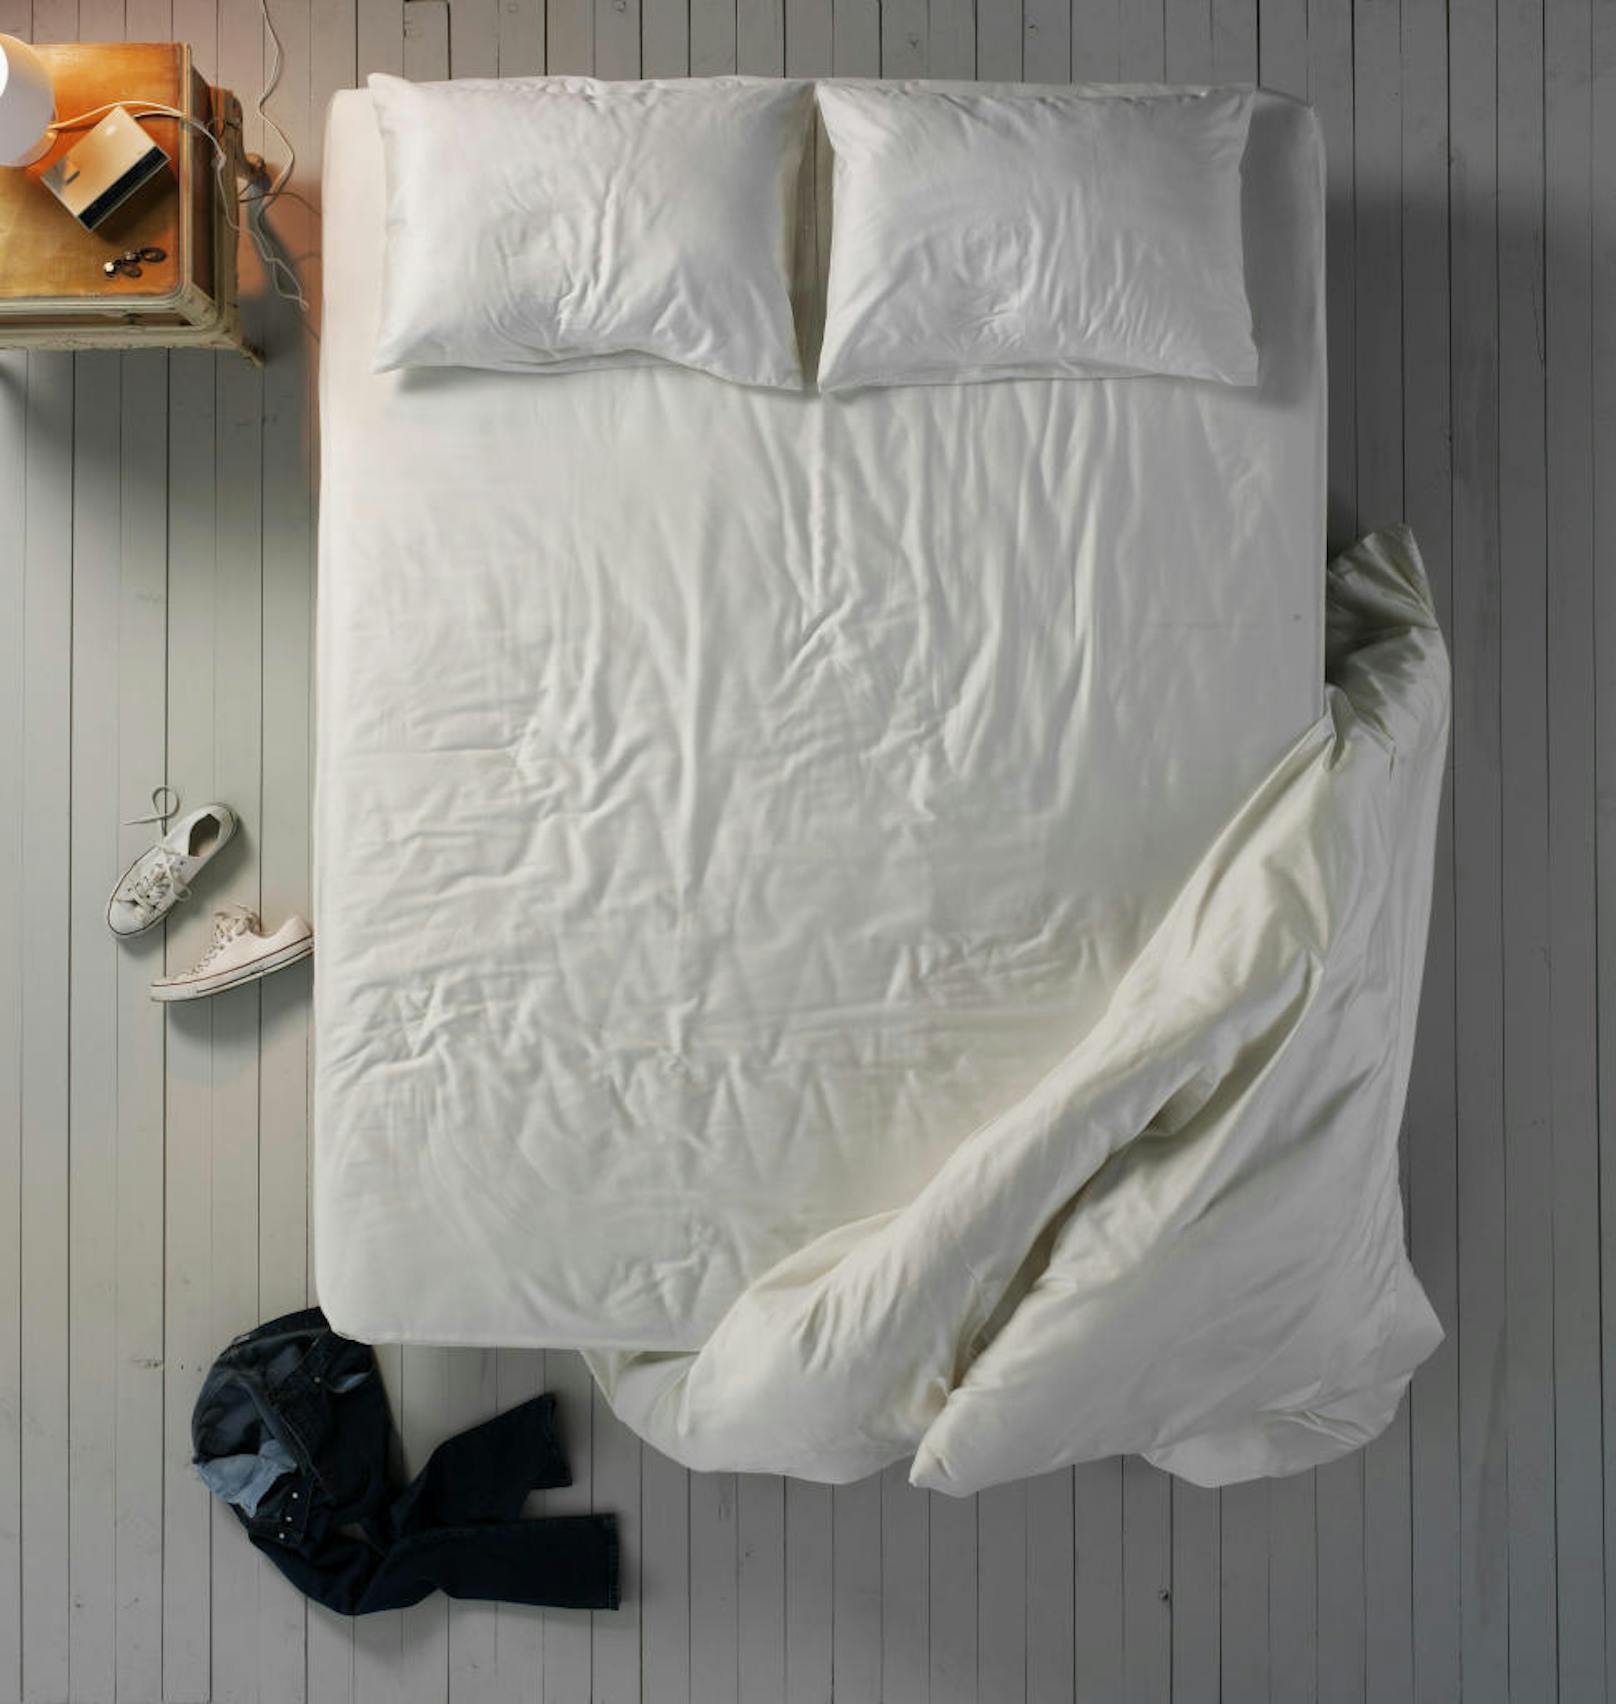 Die falsche Bettdecke kann die Qualität des Schlafes massiv beeinträchtigen. Lassen Sie sich vor dem Kauf beraten und wählen Sie ein eher leichtes Duvet.